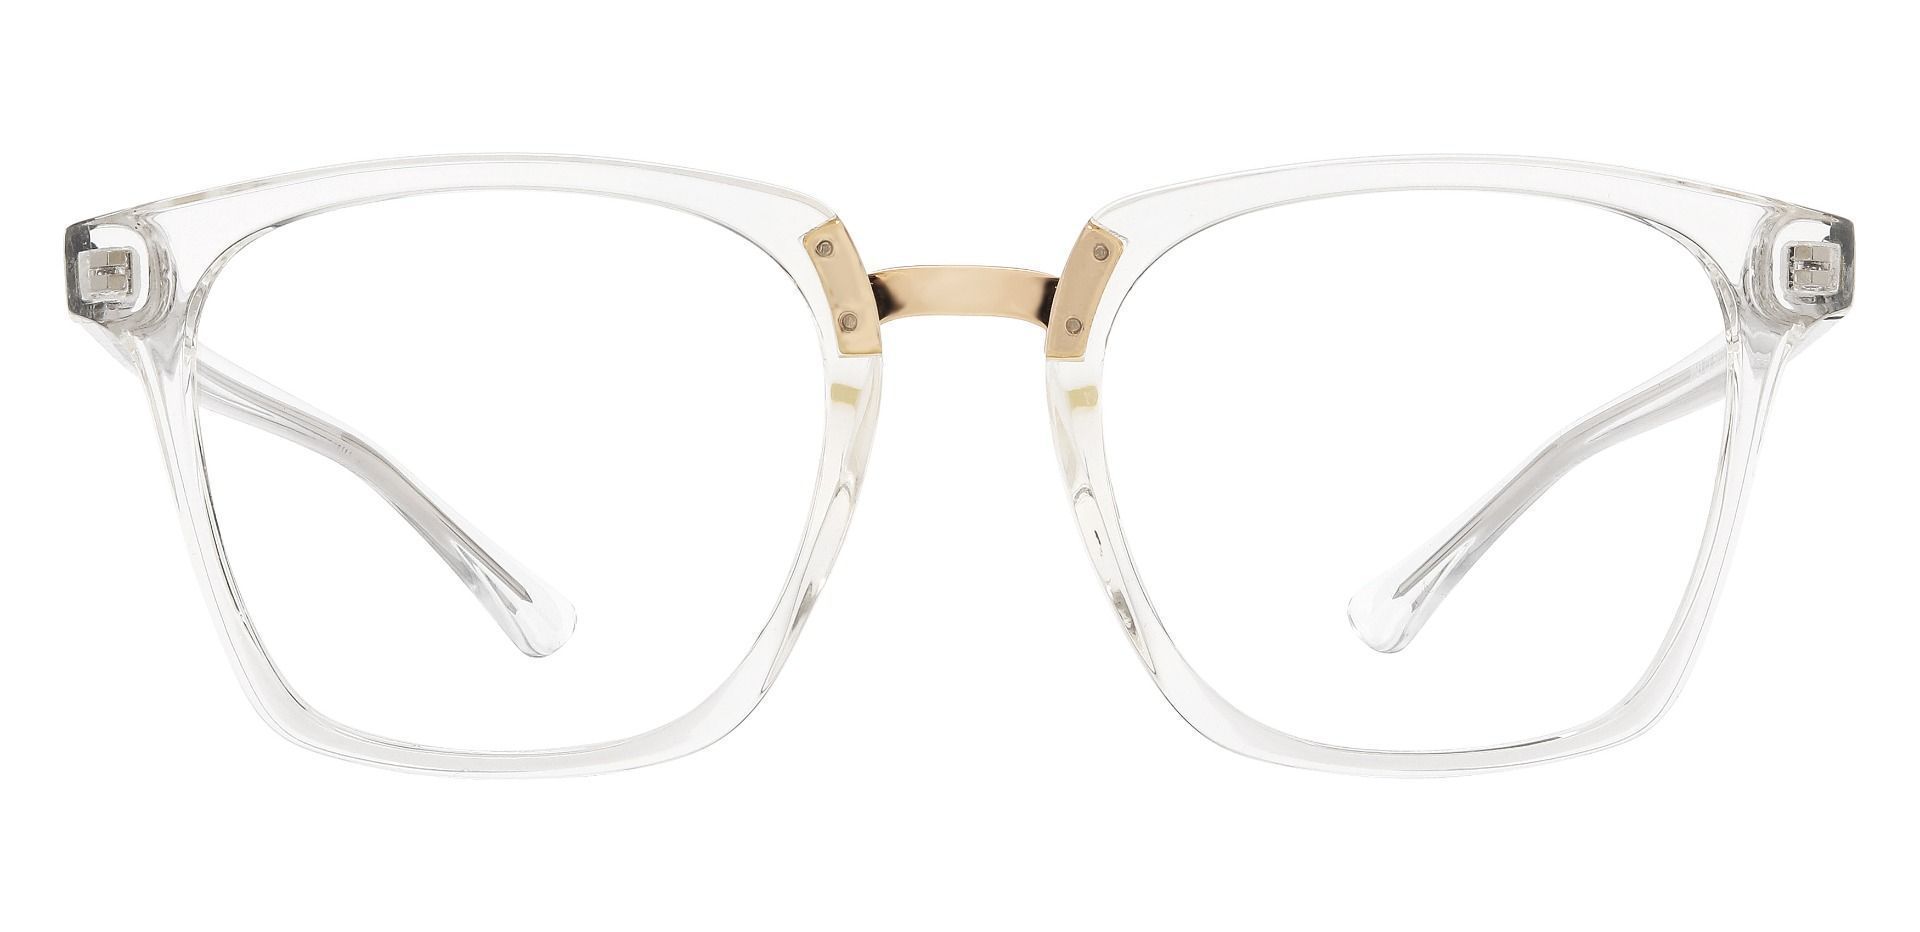 Delta Square Progressive Glasses - Clear